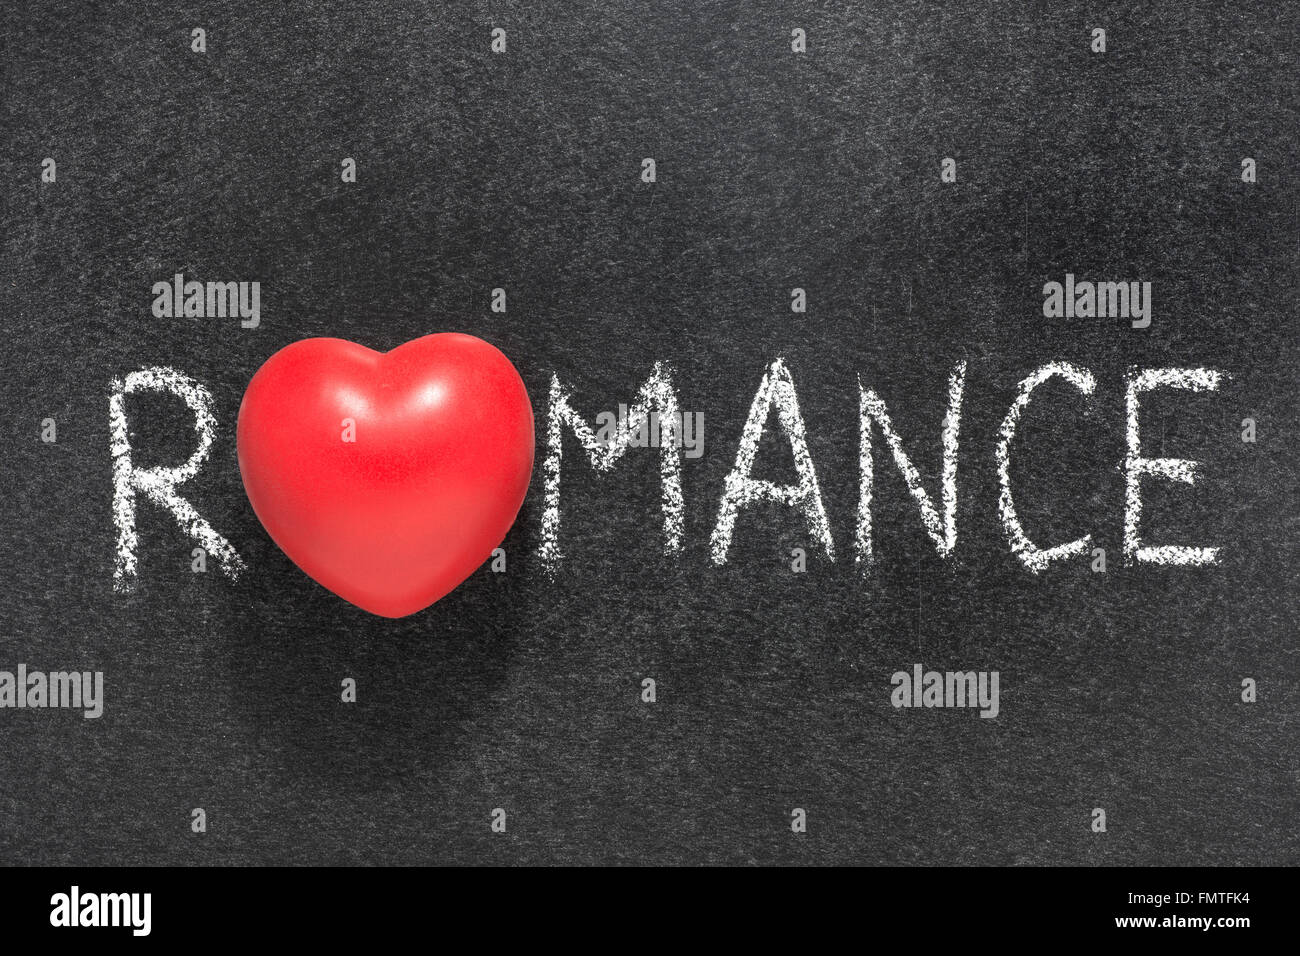 Romantik Wort Herz handschriftlich auf Tafel mit Herzsymbol statt O Stockfoto